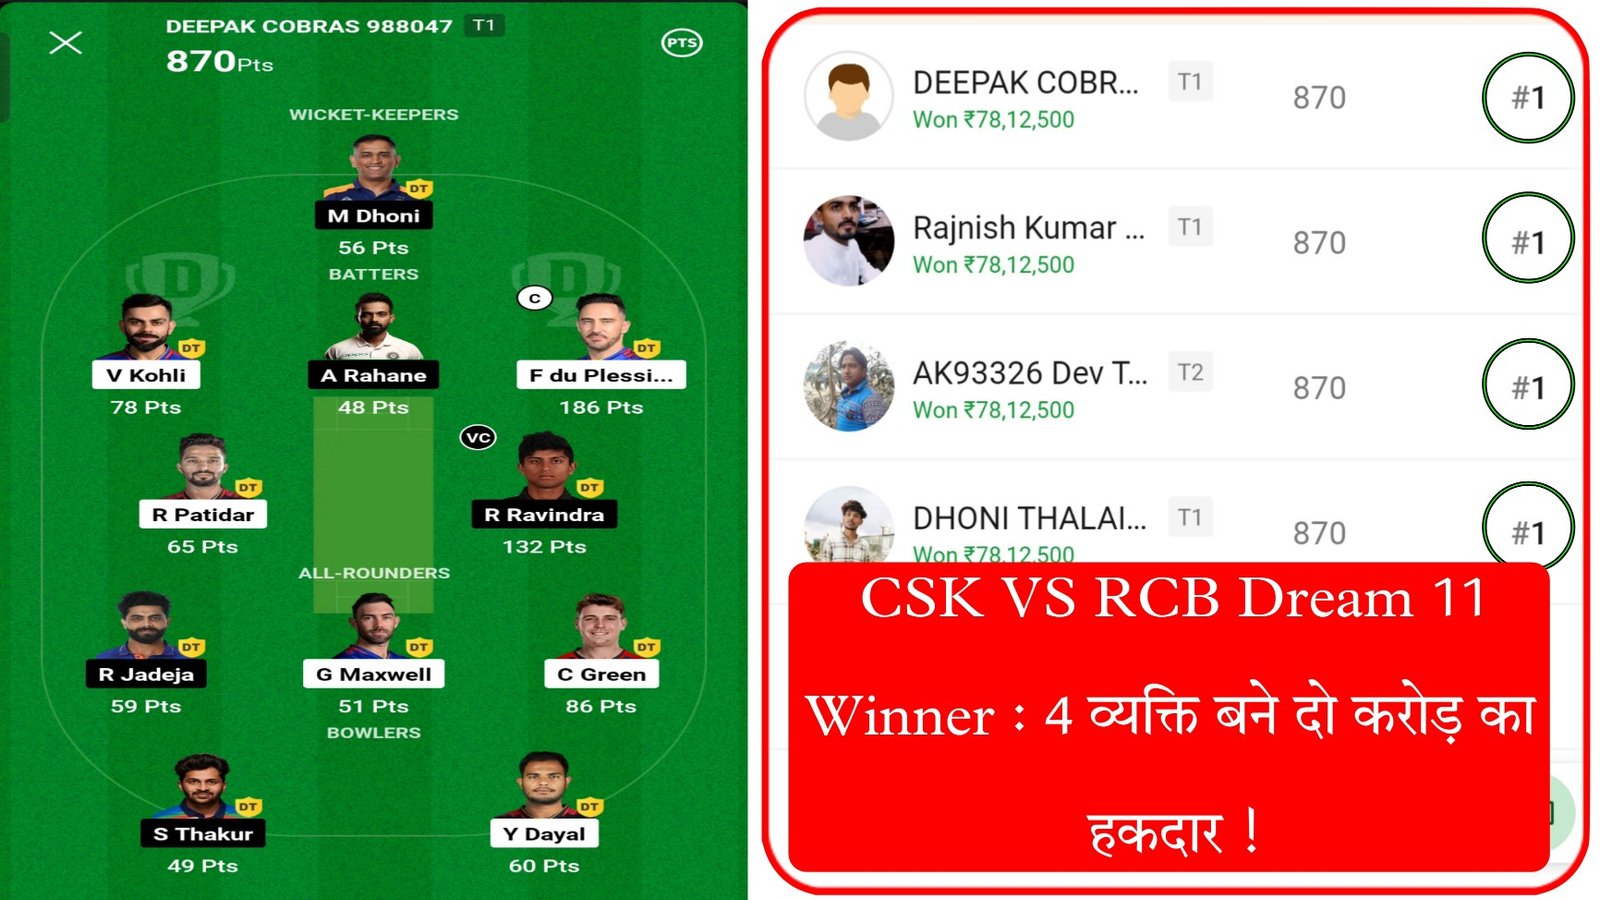 CSK VS RCB Dream 11 Winner